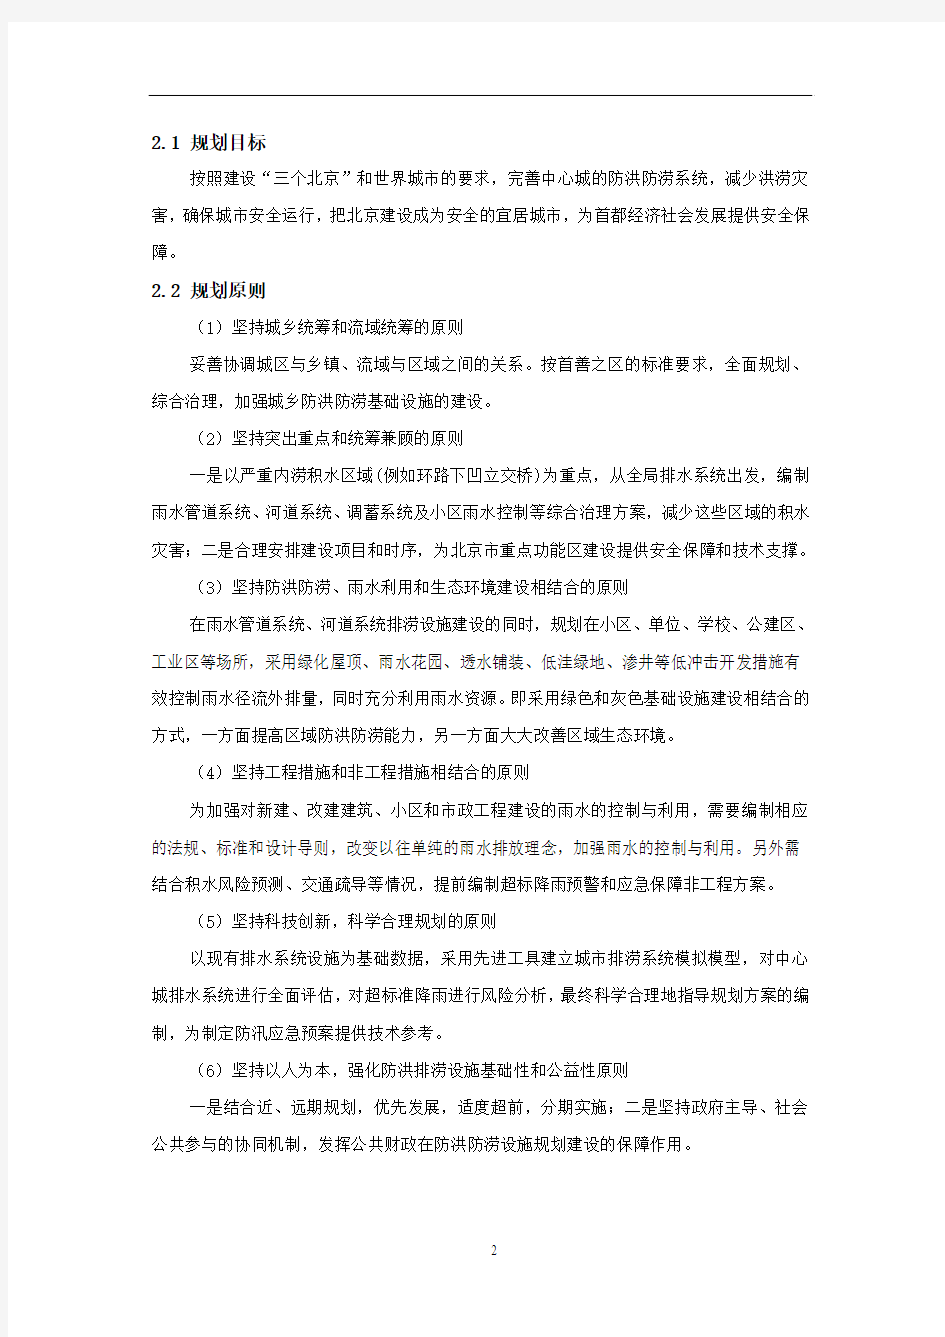 北京市中心城防洪防涝系统规划总体情况介绍